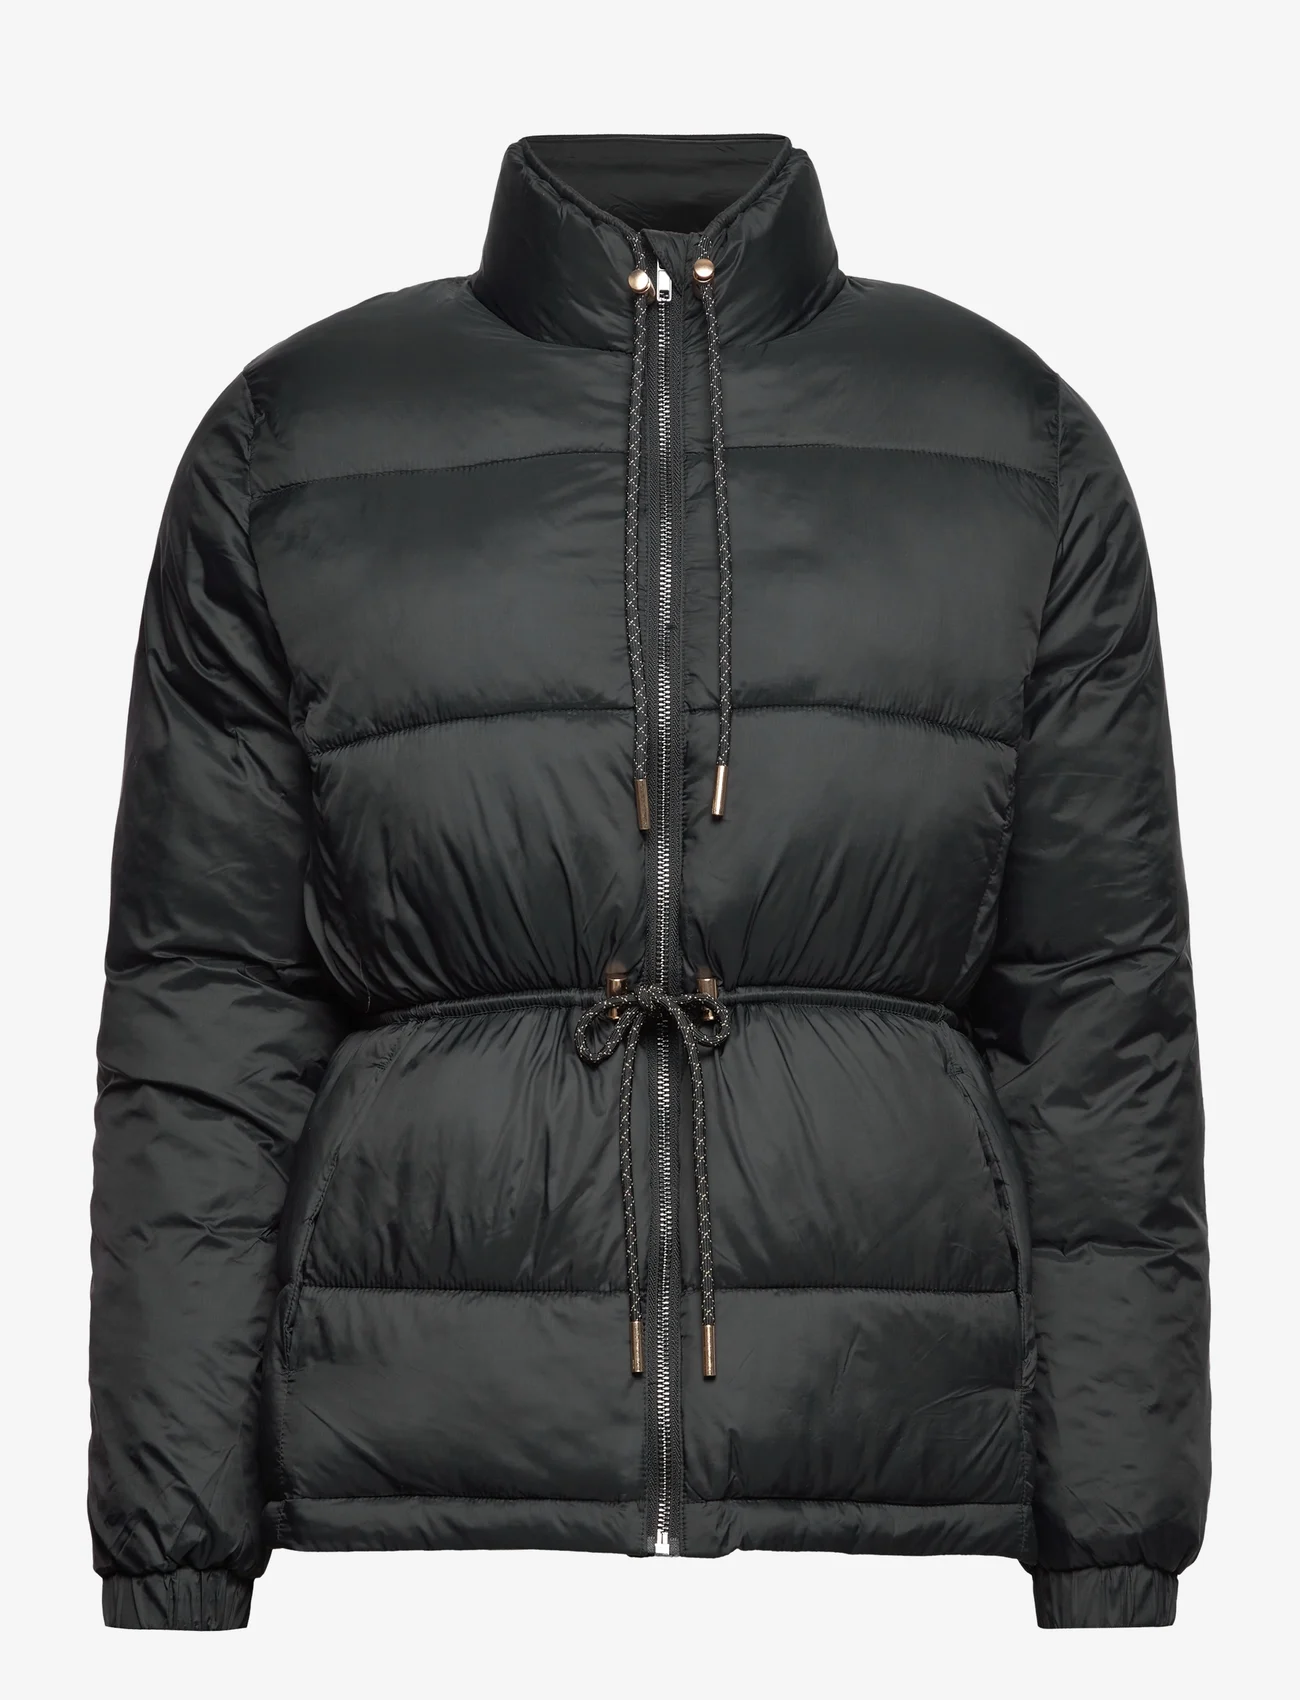 Saint Tropez - NonaSZ Jacket - winter jackets - black - 0